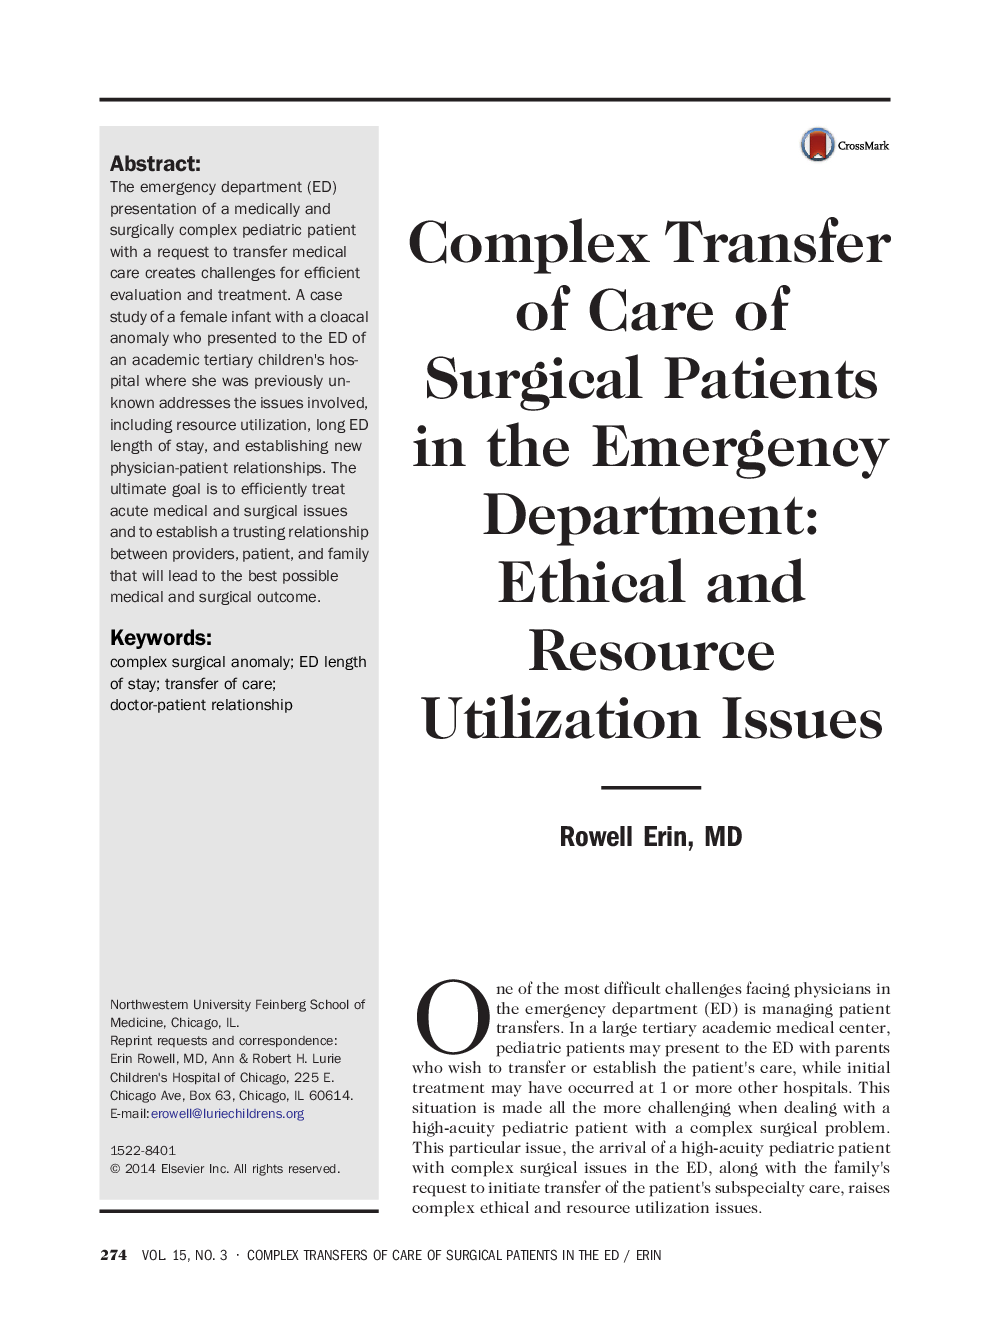 انتقال کاملی از مراقبت از جراحی در بخش اورژانس: مسائل مربوط به اخلاق و منابع 